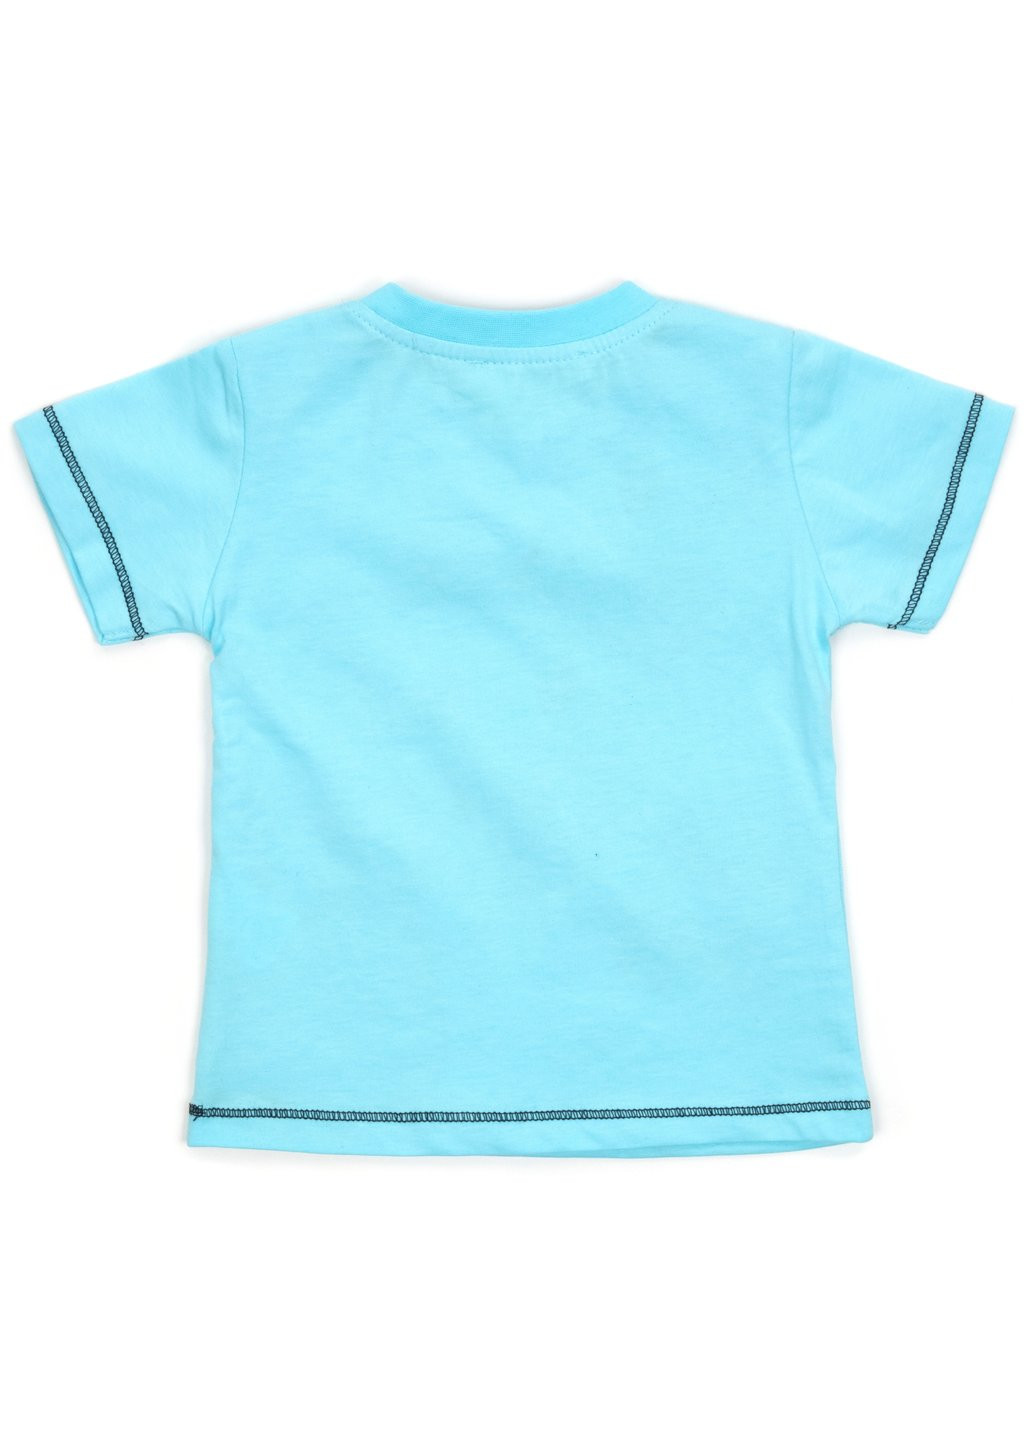 Голубой летний набор детской одежды с жирафом (13739-74b-blue) Breeze